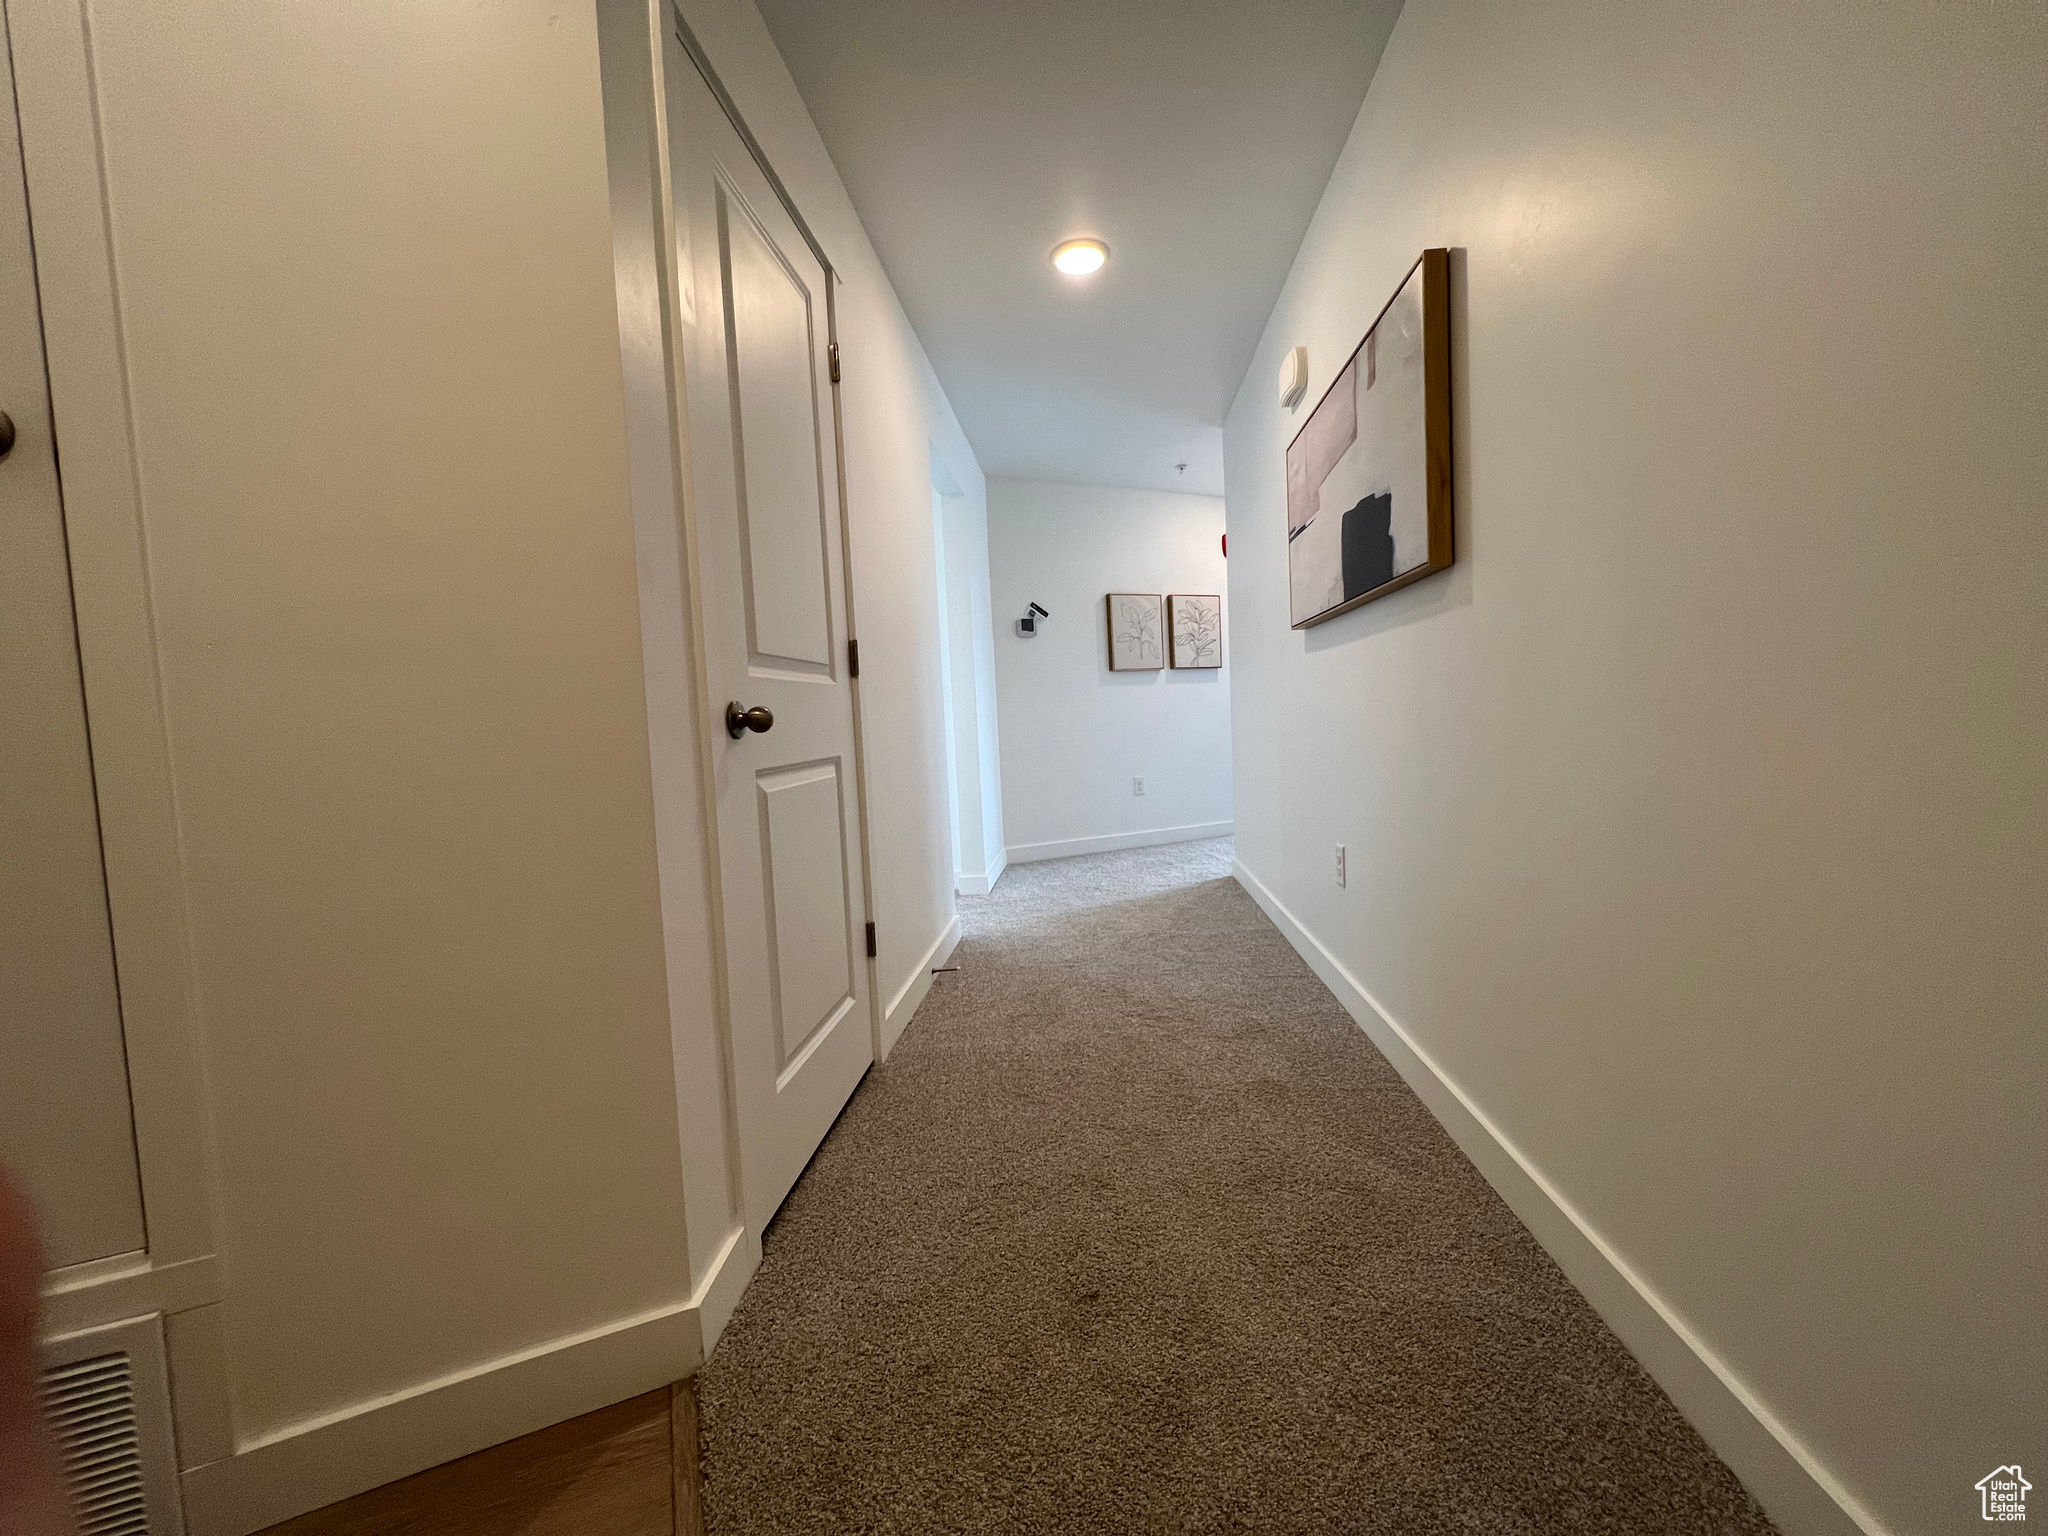 Corridor featuring carpet flooring